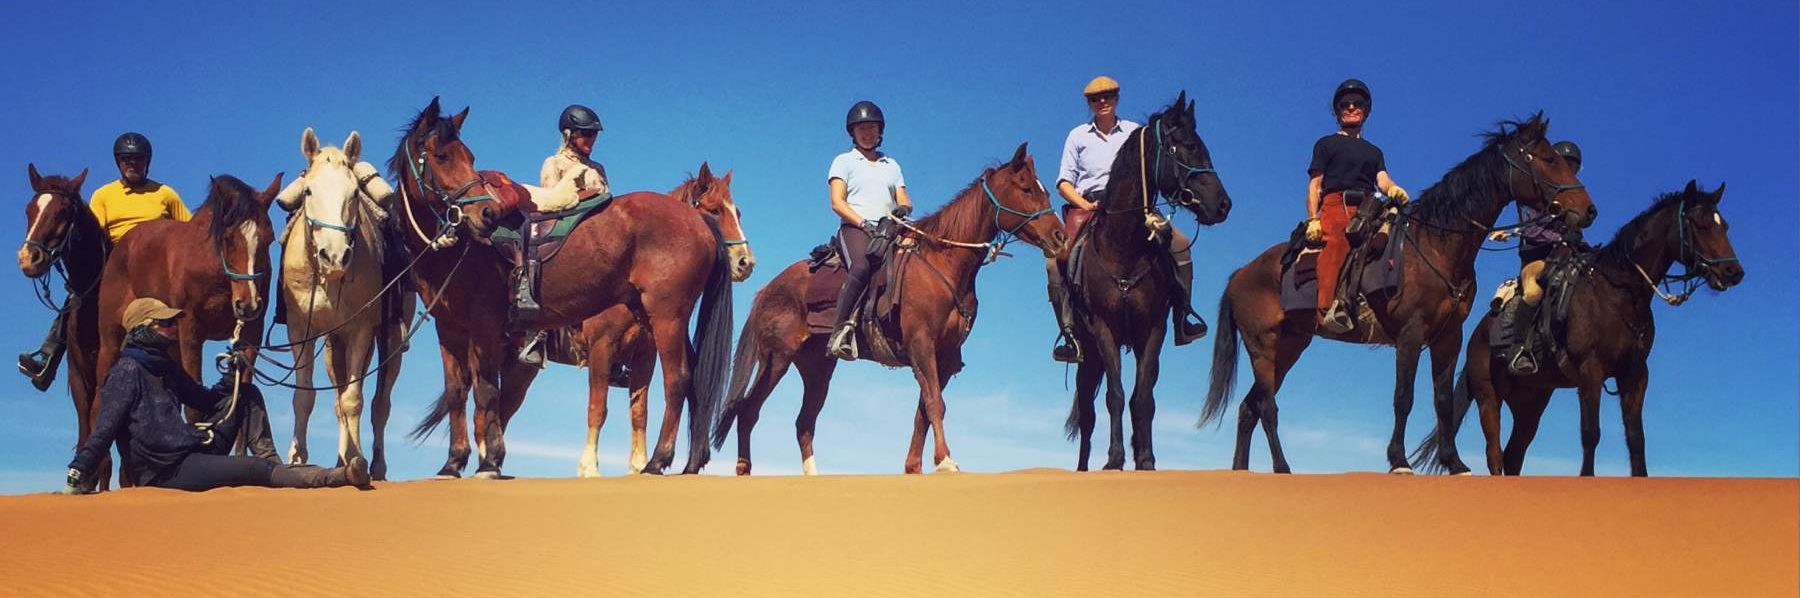 10 Riders, 14 Horses and 350km of Desert